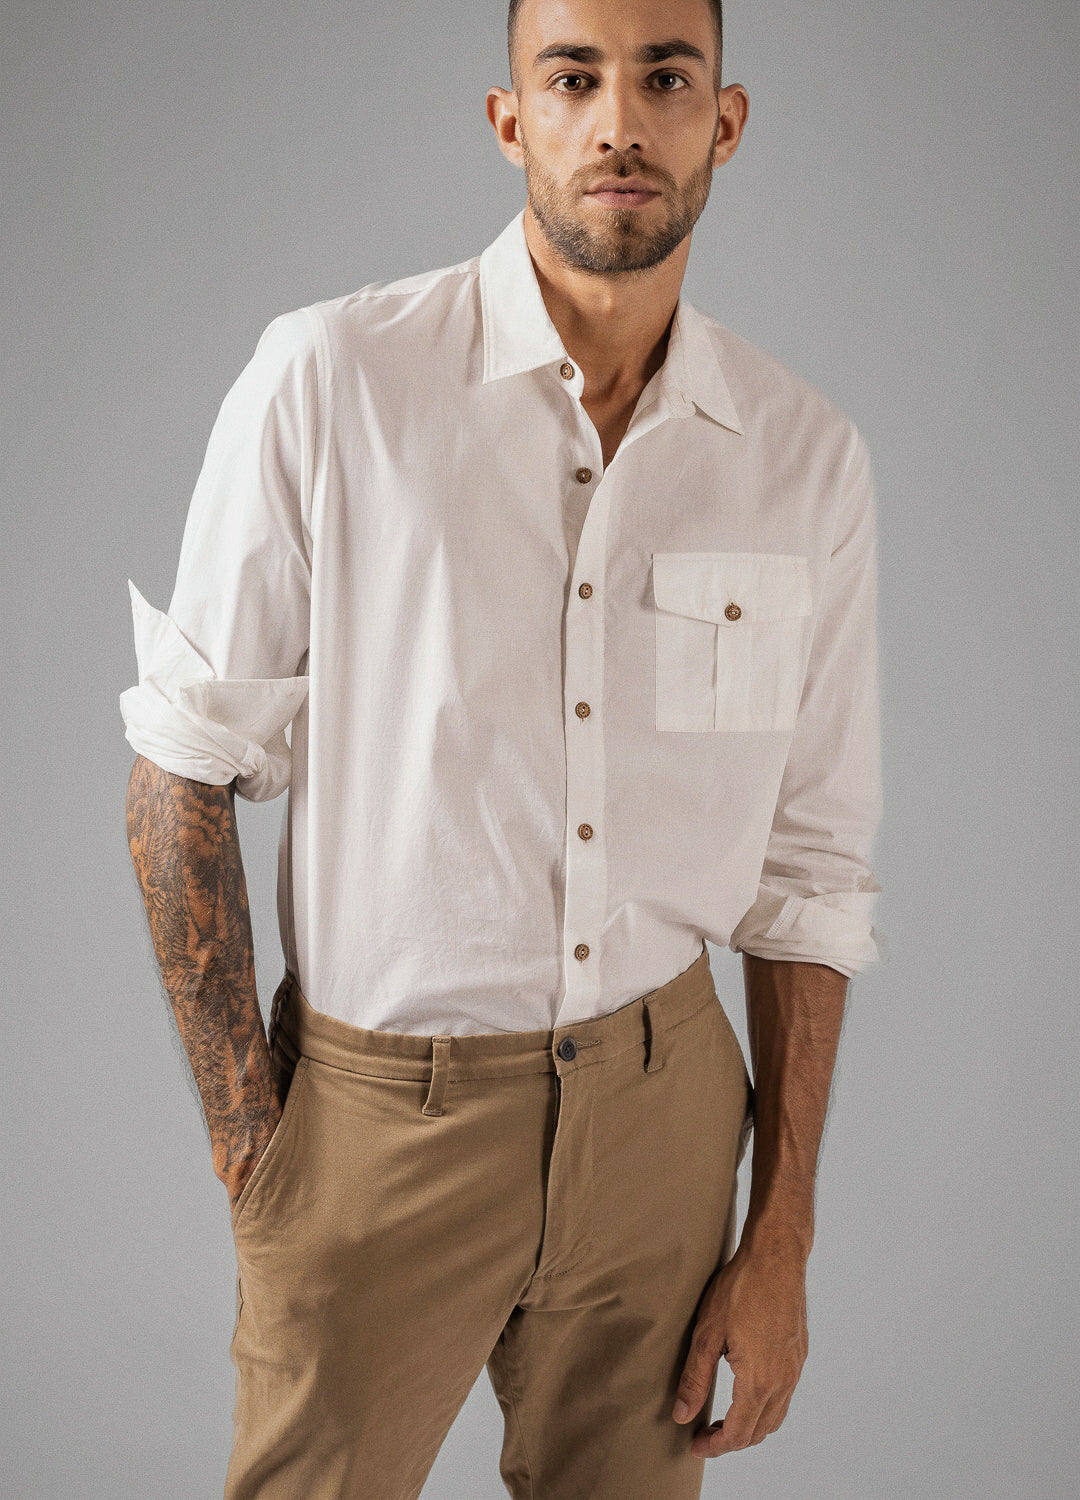  Coconut Milk White Organic Cotton Full Sleeve Everyday Shirt For Men Online